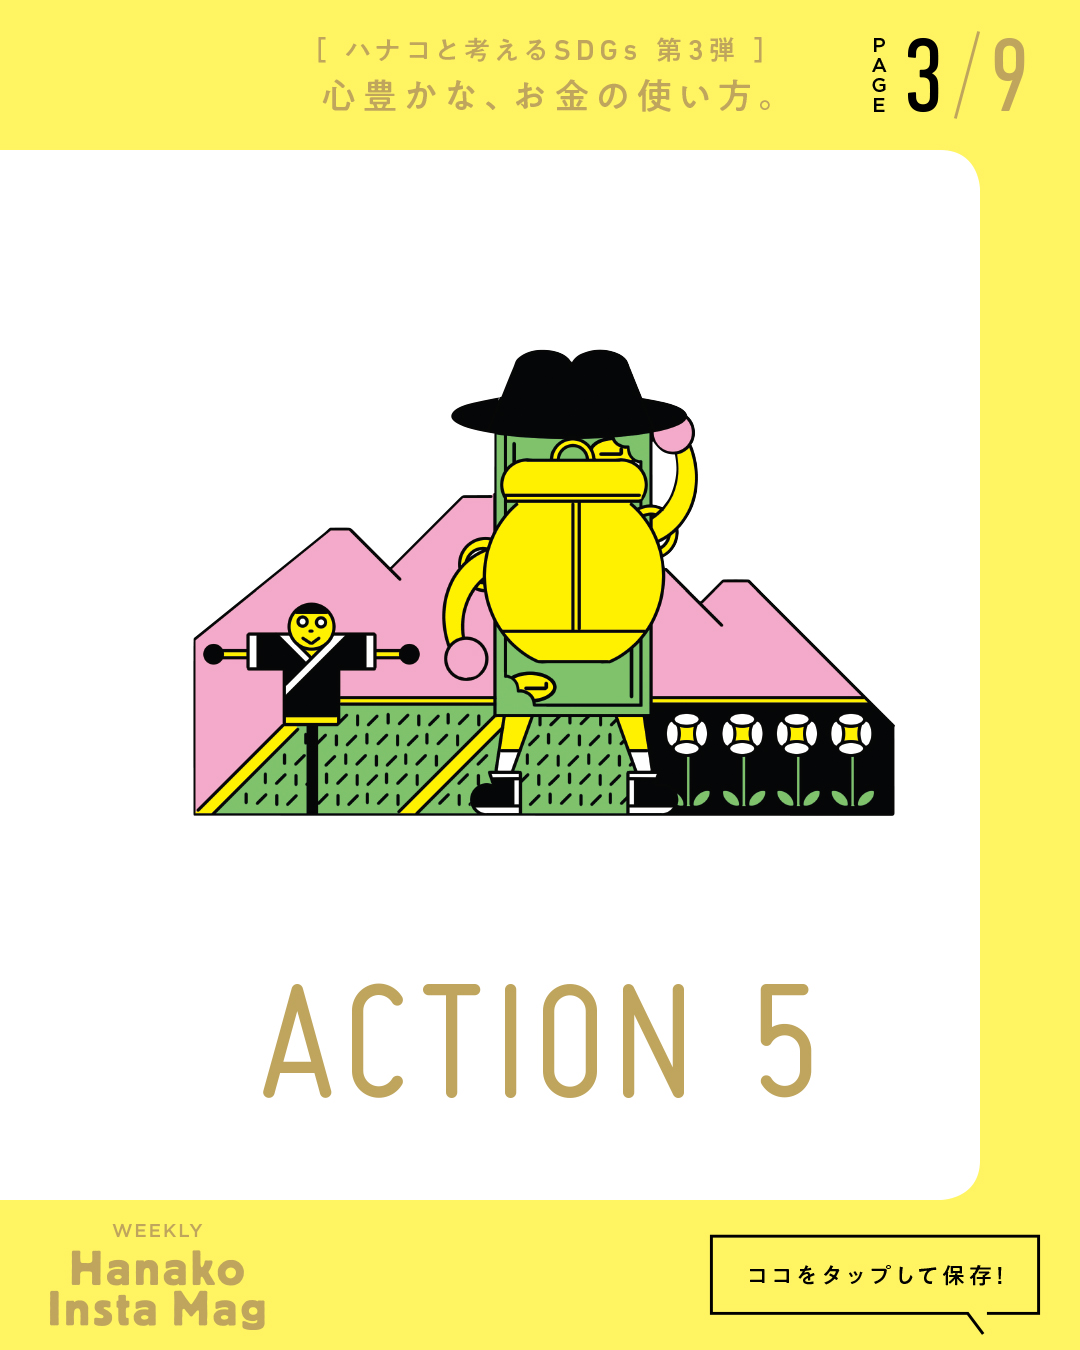 SDGs#3_sekai_action#5-3